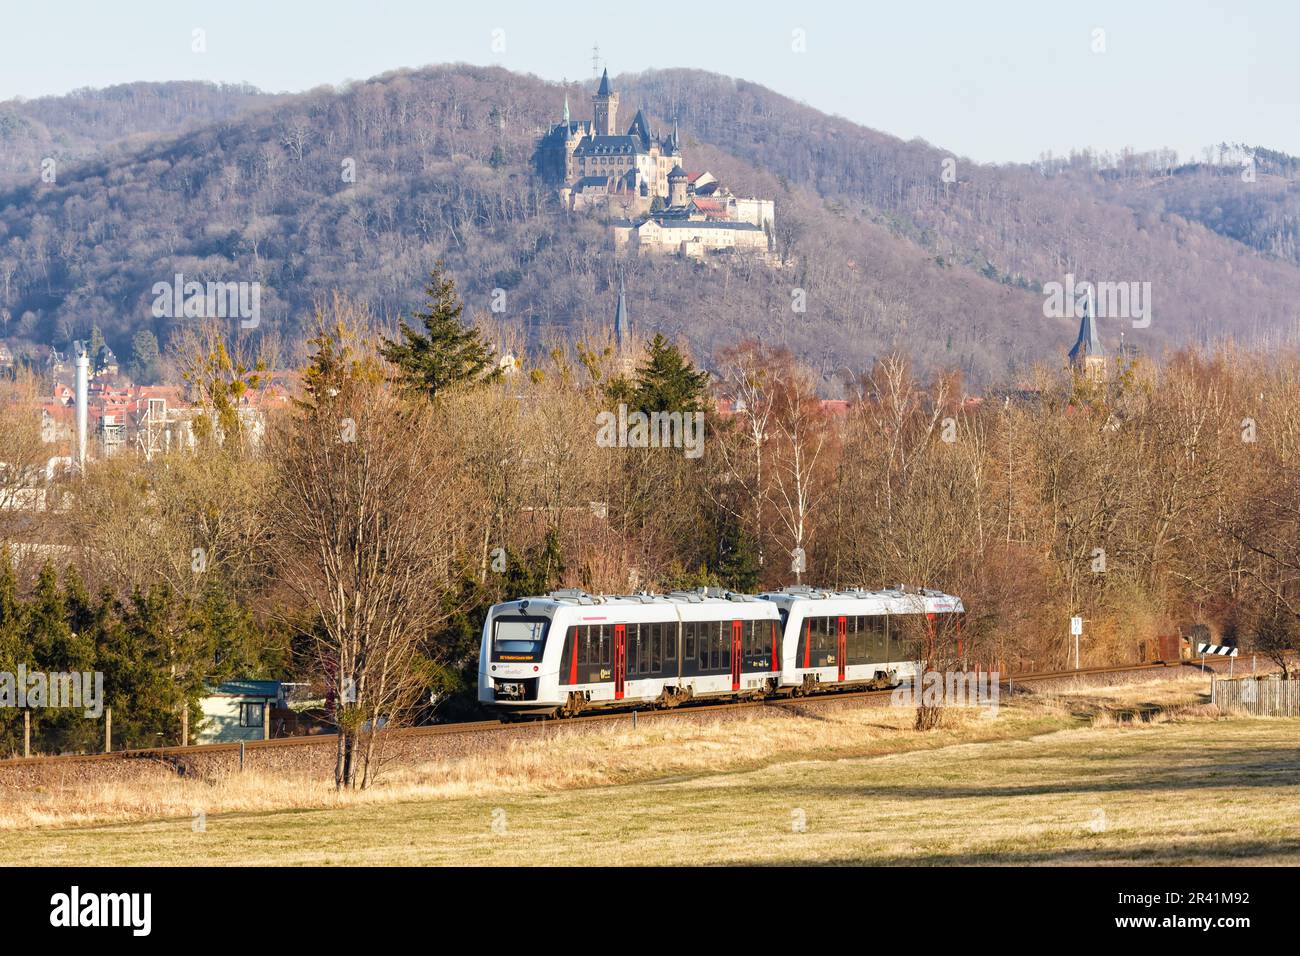 Regionalzug Regionalzug Alstom Coradia LINT vom Typ Abellio bei Wernigerode, Deutschland Stockfoto